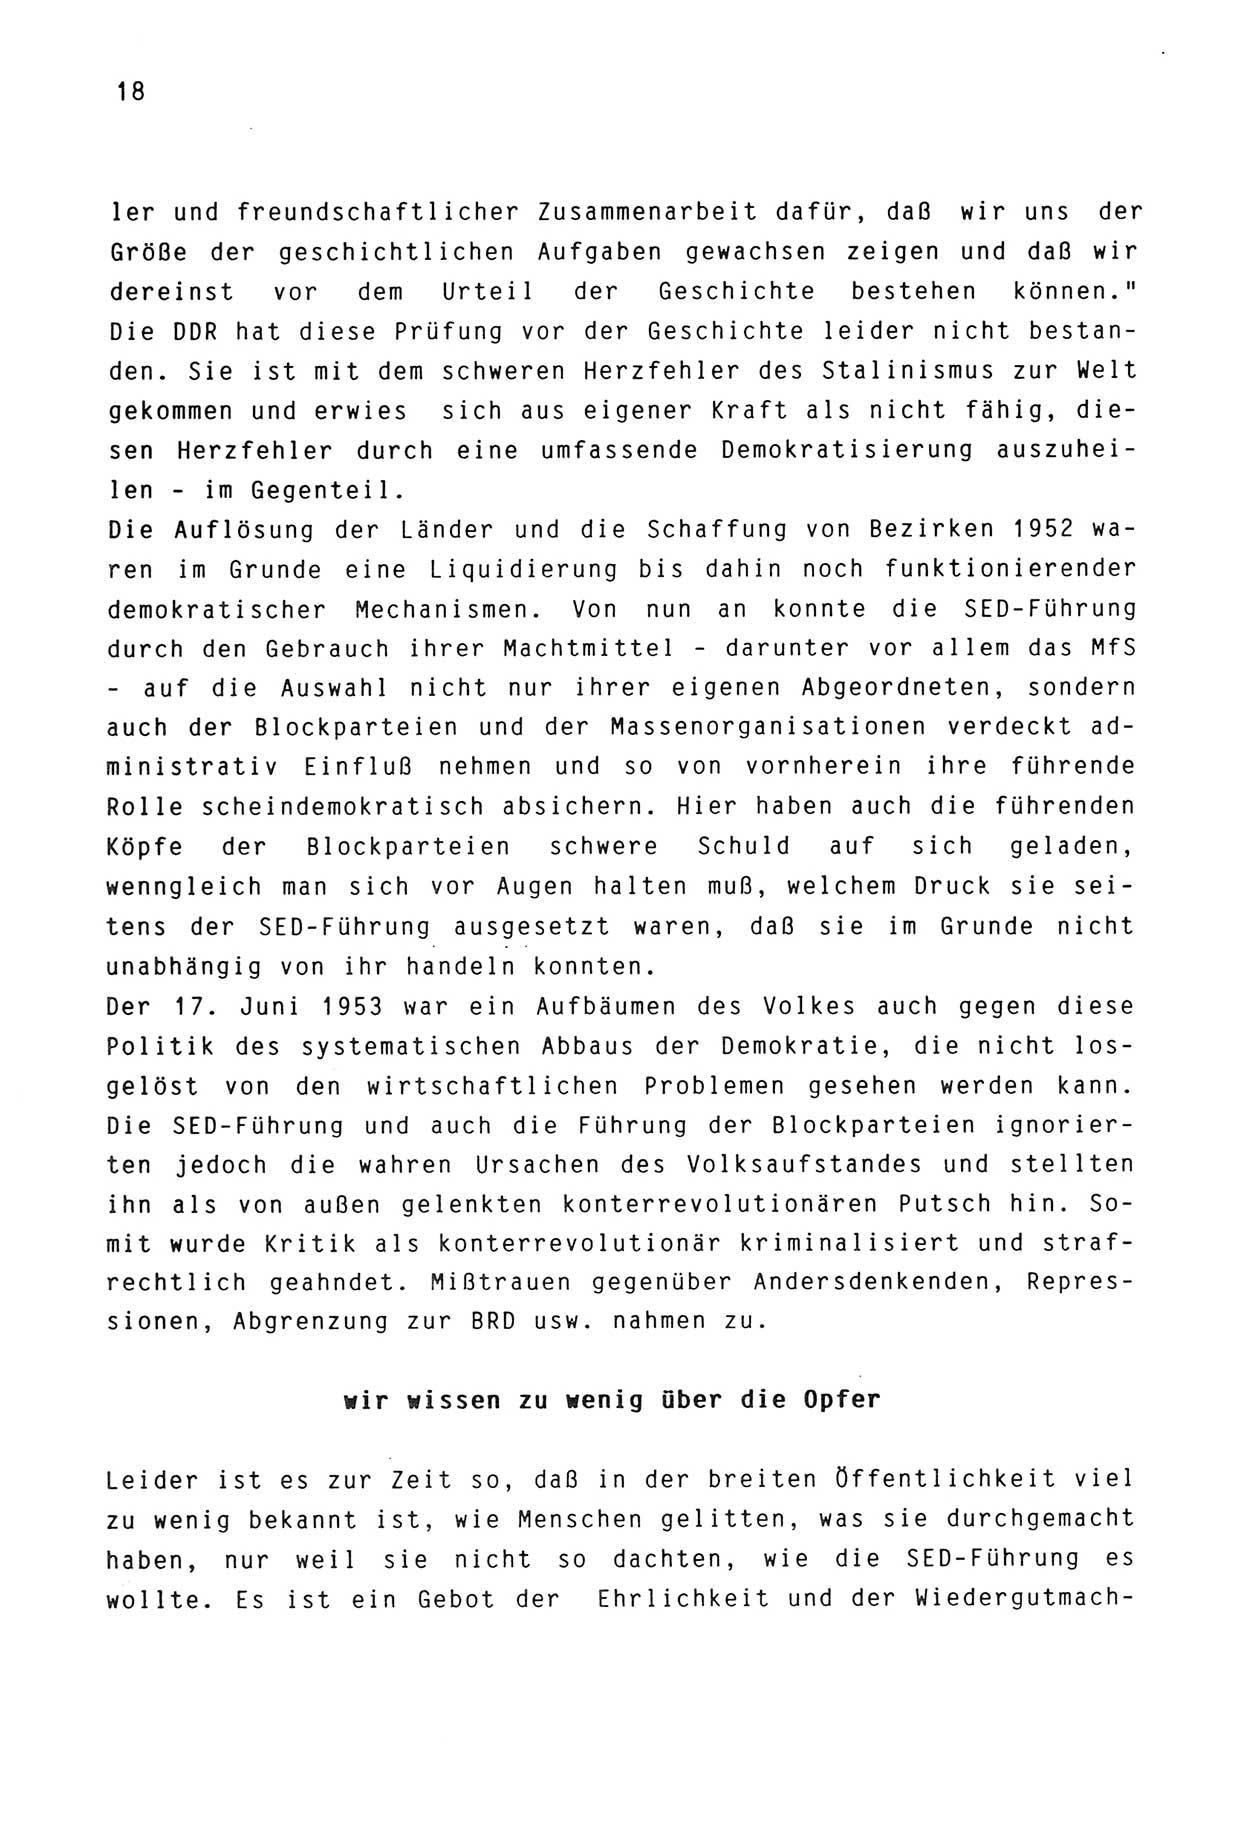 Zwie-Gespräch, Beiträge zur Aufarbeitung der Stasi-Vergangenheit [Deutsche Demokratische Republik (DDR)], Ausgabe Nr. 3, Berlin 1991, Seite 18 (Zwie-Gespr. Ausg. 3 1991, S. 18)